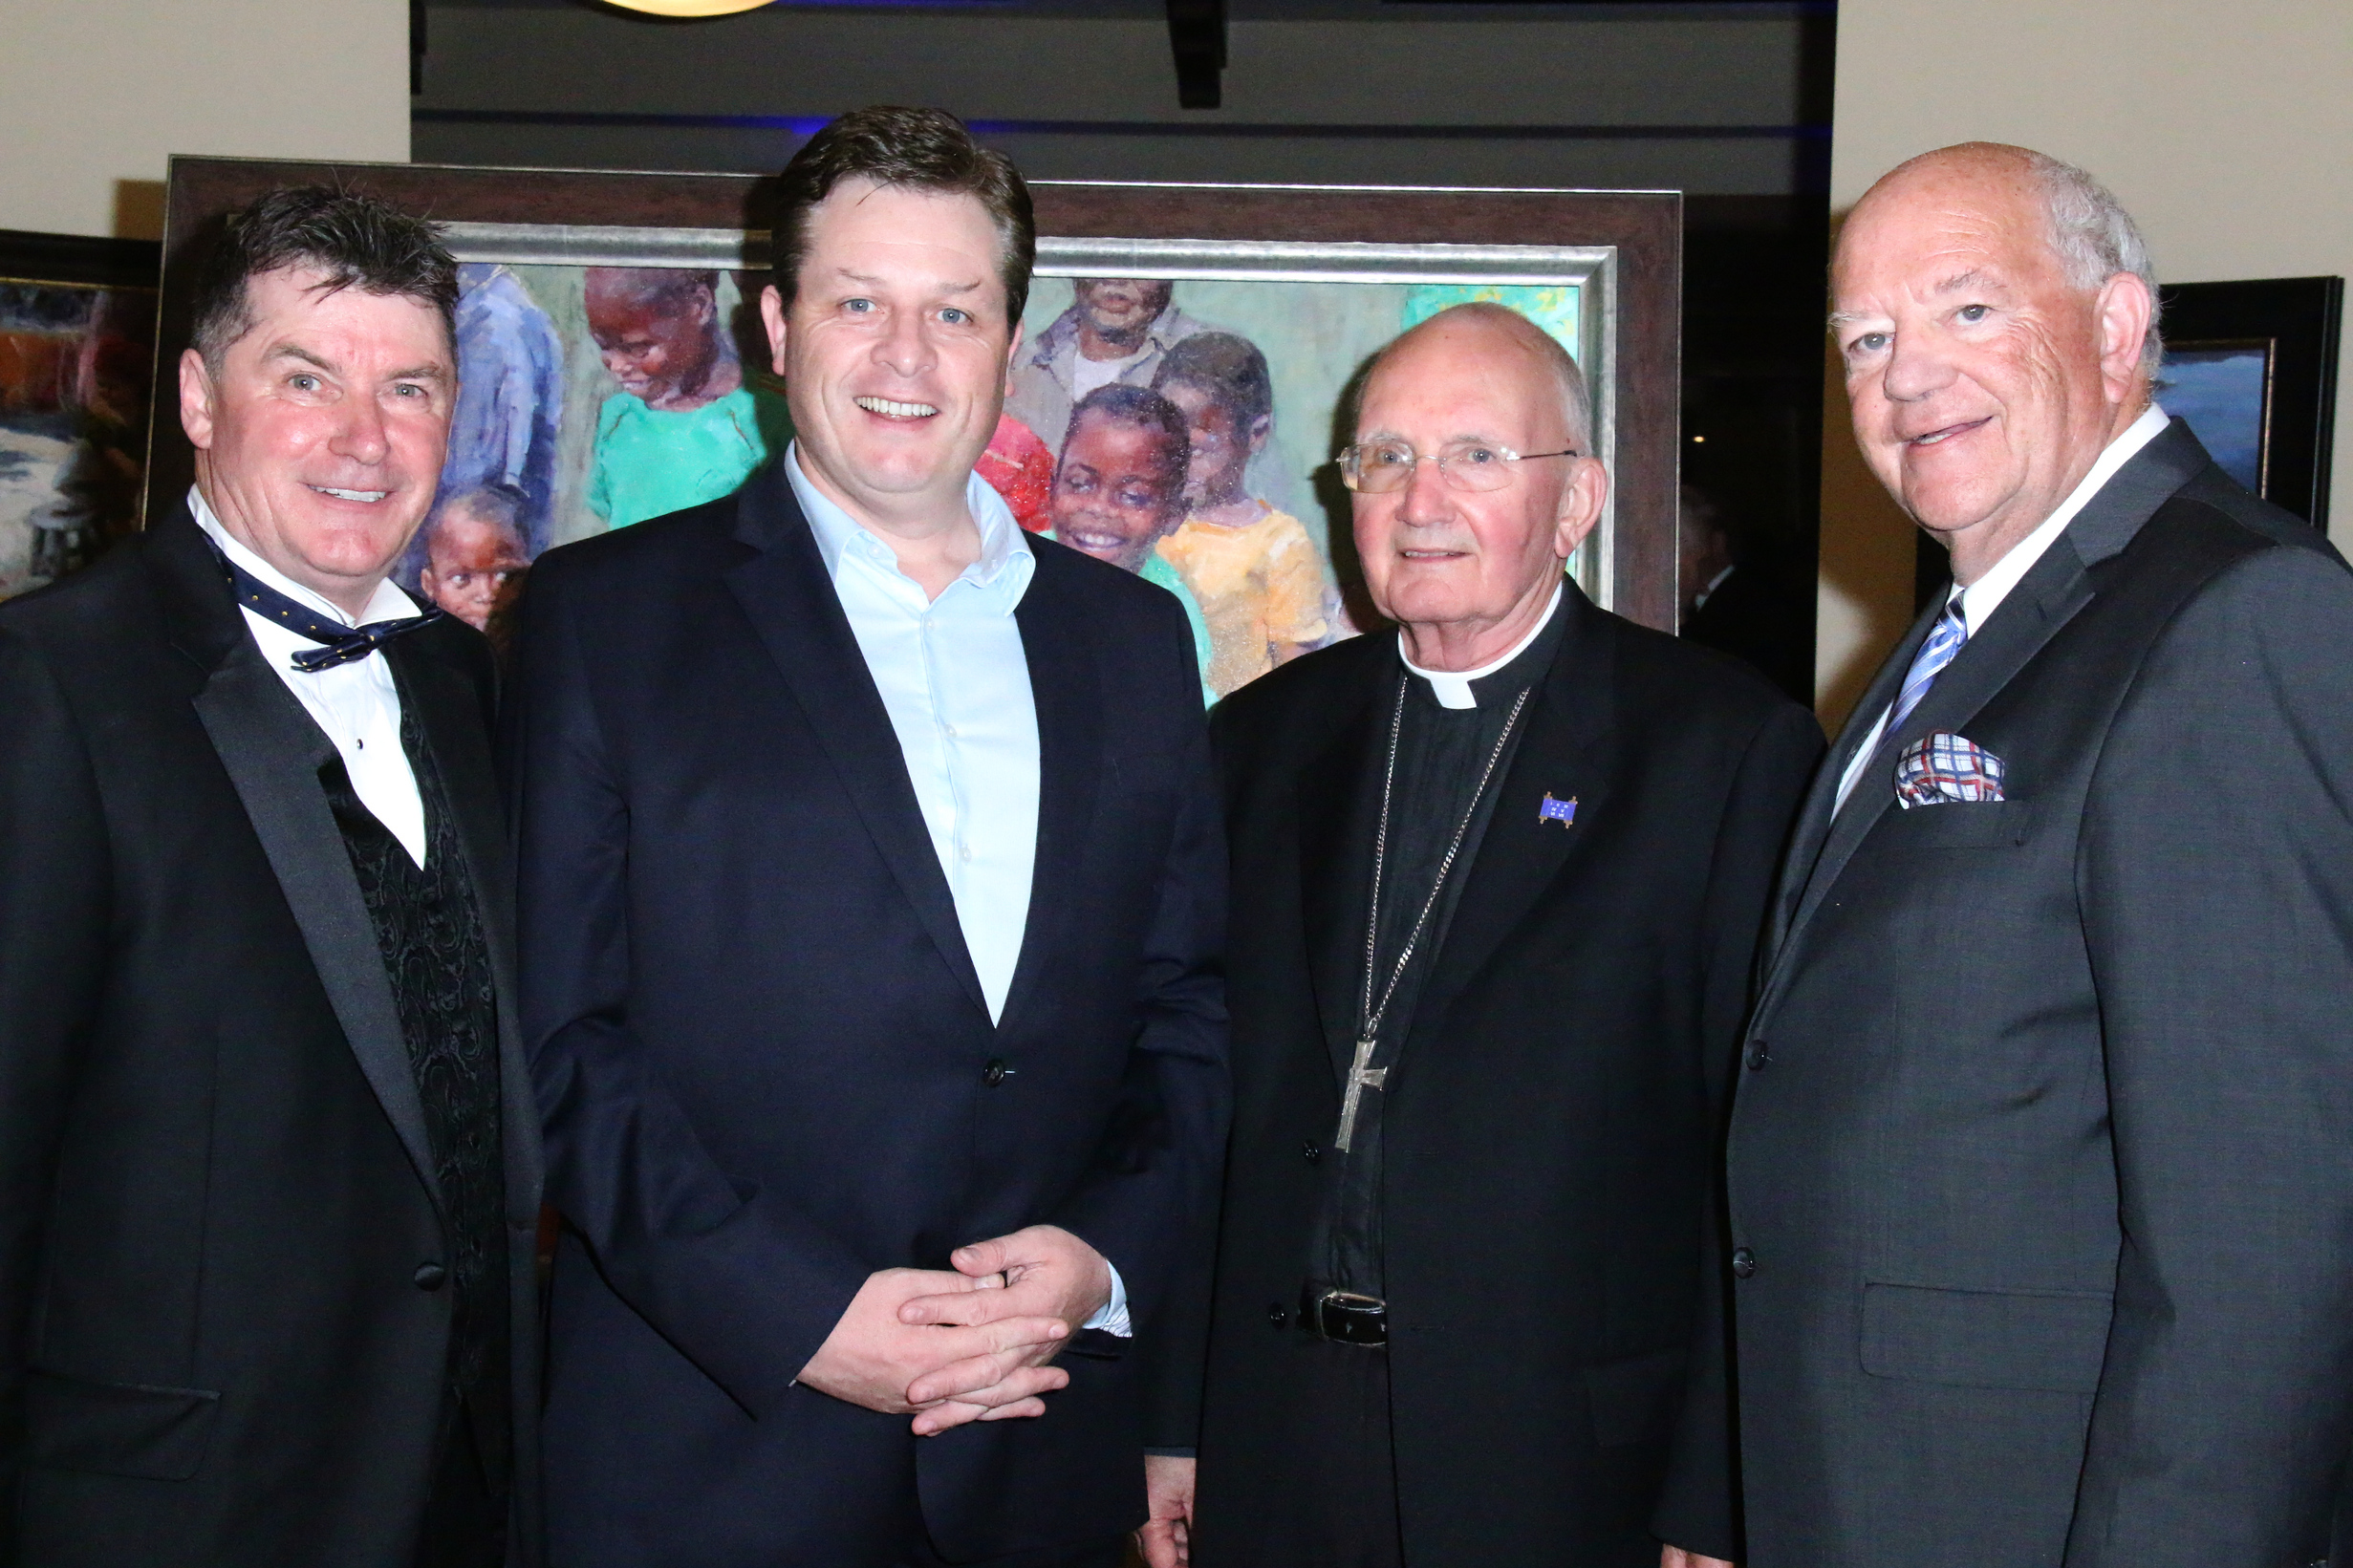 Nick Jordan, Anthony Kearns, Bishop Tod Brown and Finbar Hill, Photo by Bob Delgadillo